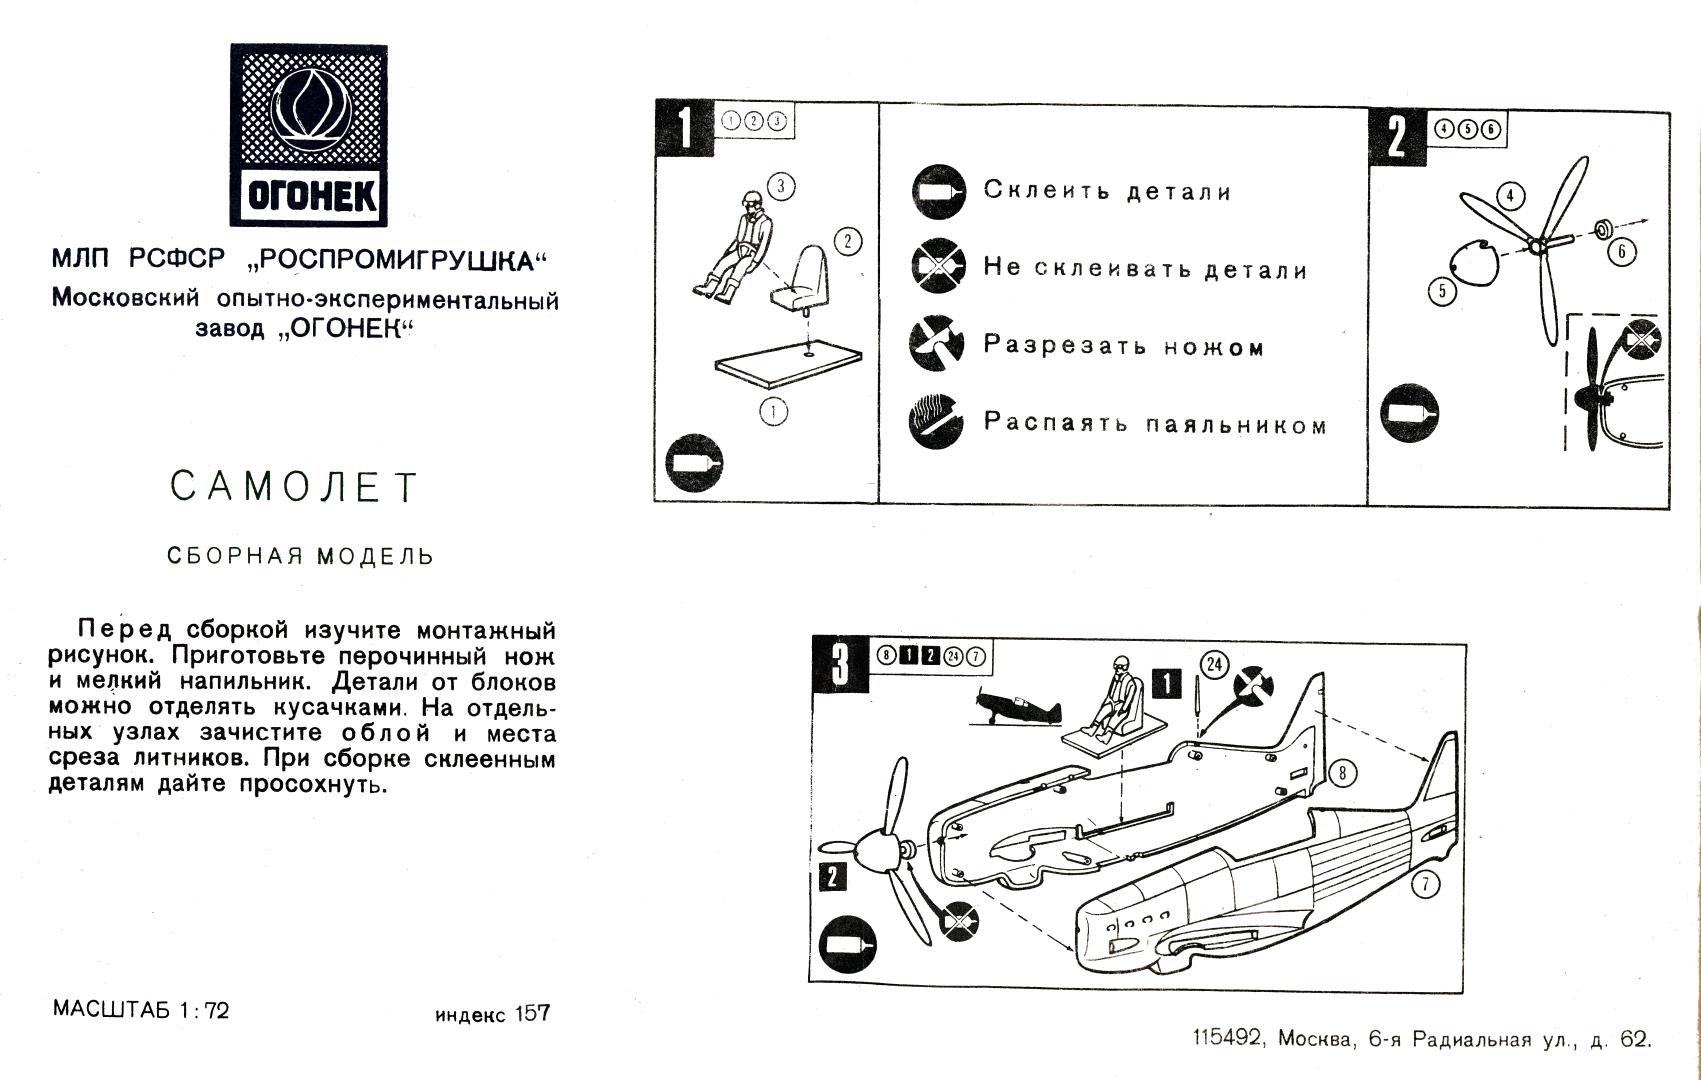 Инструкция индекс 157 Самолёт, Огонёк 1980-82б самый ранний вариант